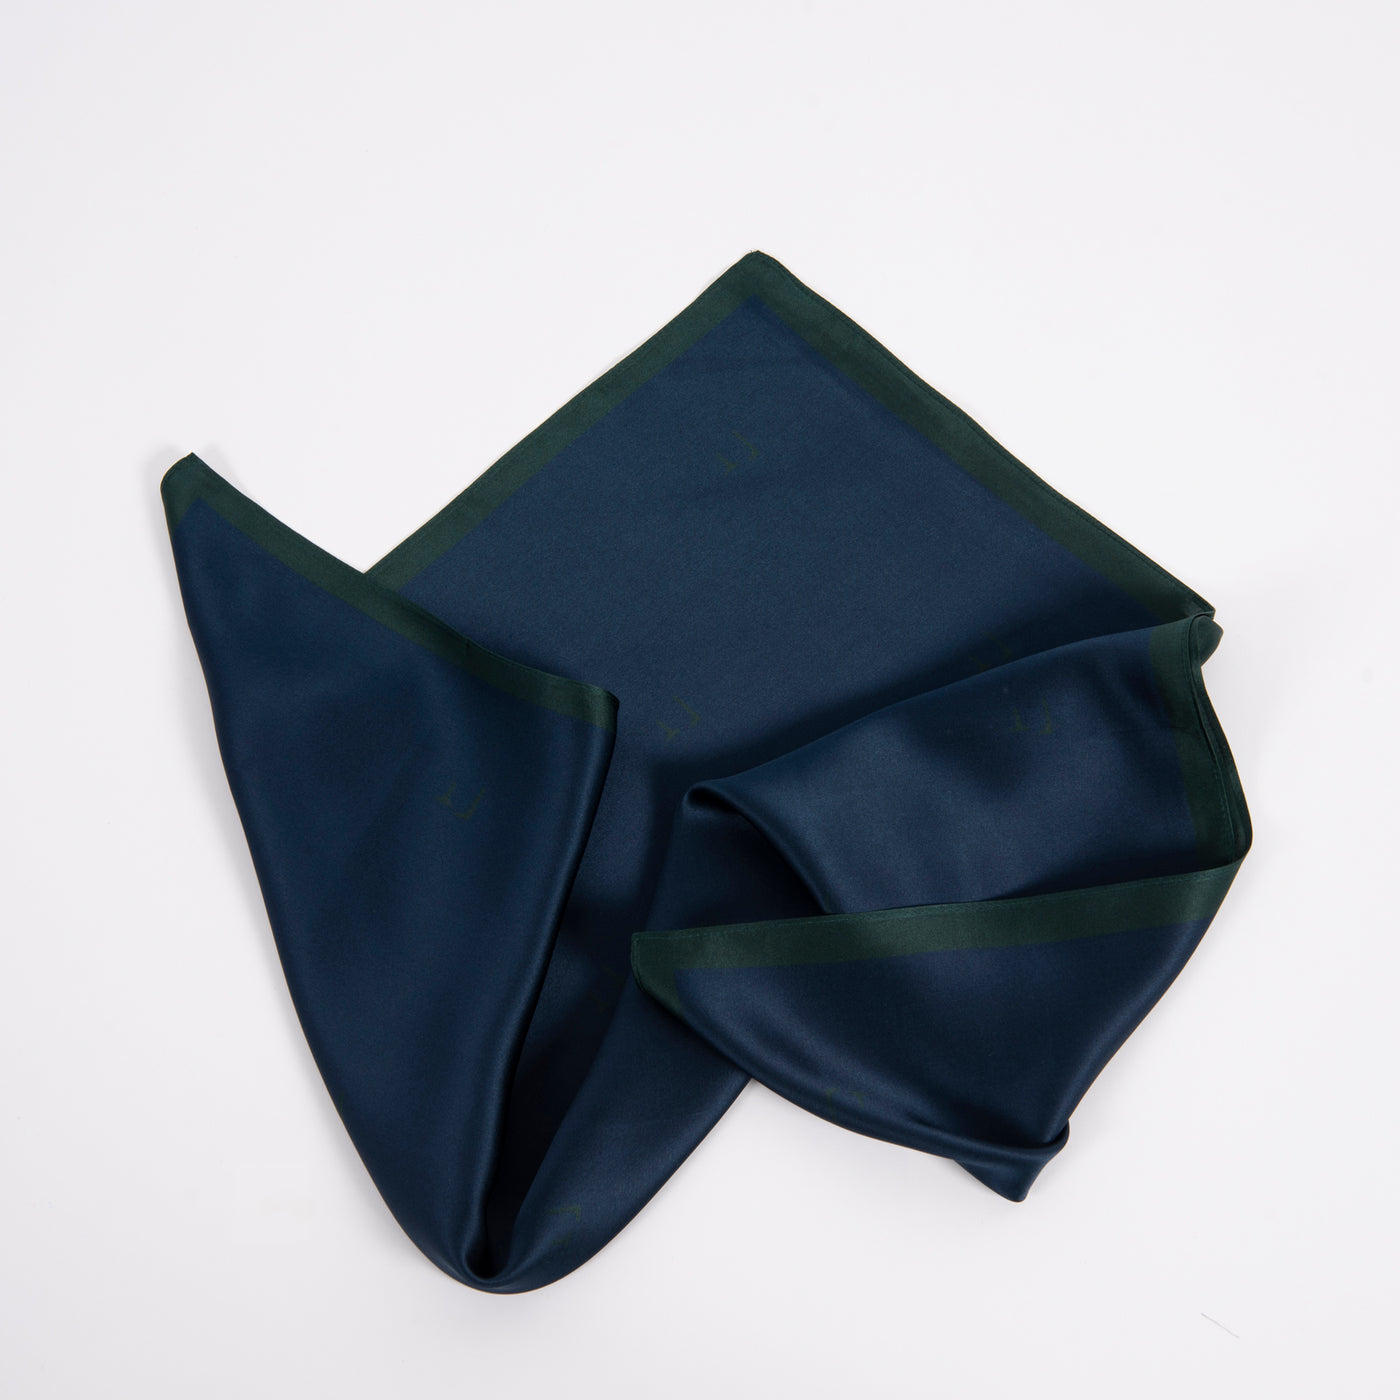 Frimino Paris Blue Silkeskjerf - Mørkeblå skjerf i 100% silke med mørk grønn kant og diskre print